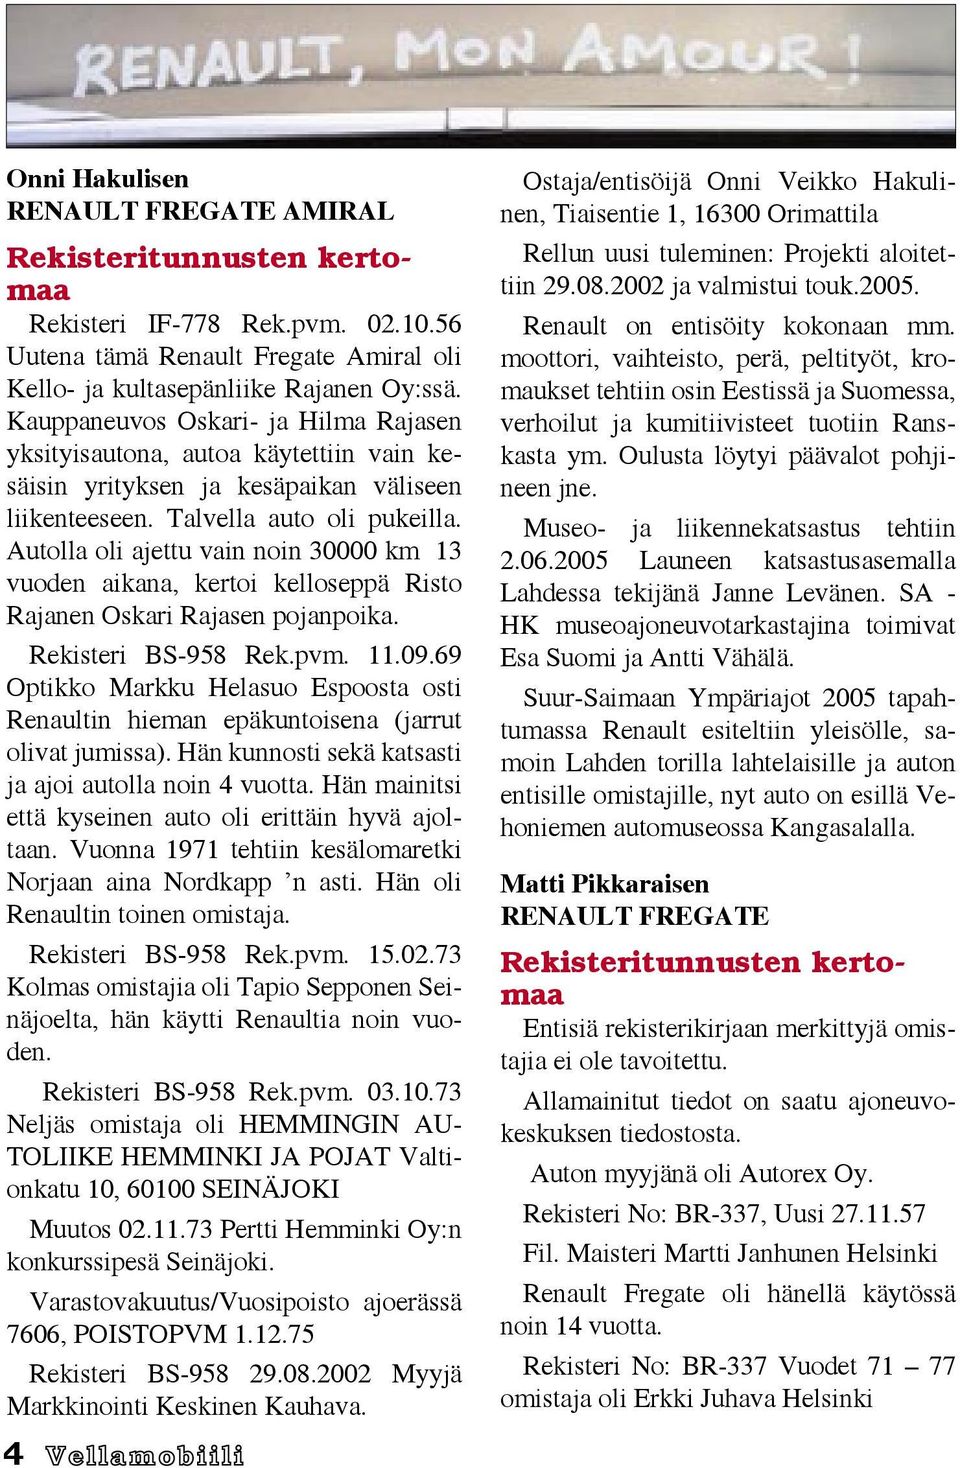 Autolla oli ajettu vain noin 30000 km 13 vuoden aikana, kertoi kelloseppä Risto Rajanen Oskari Rajasen pojanpoika. Rekisteri BS-958 Rek.pvm. 11.09.